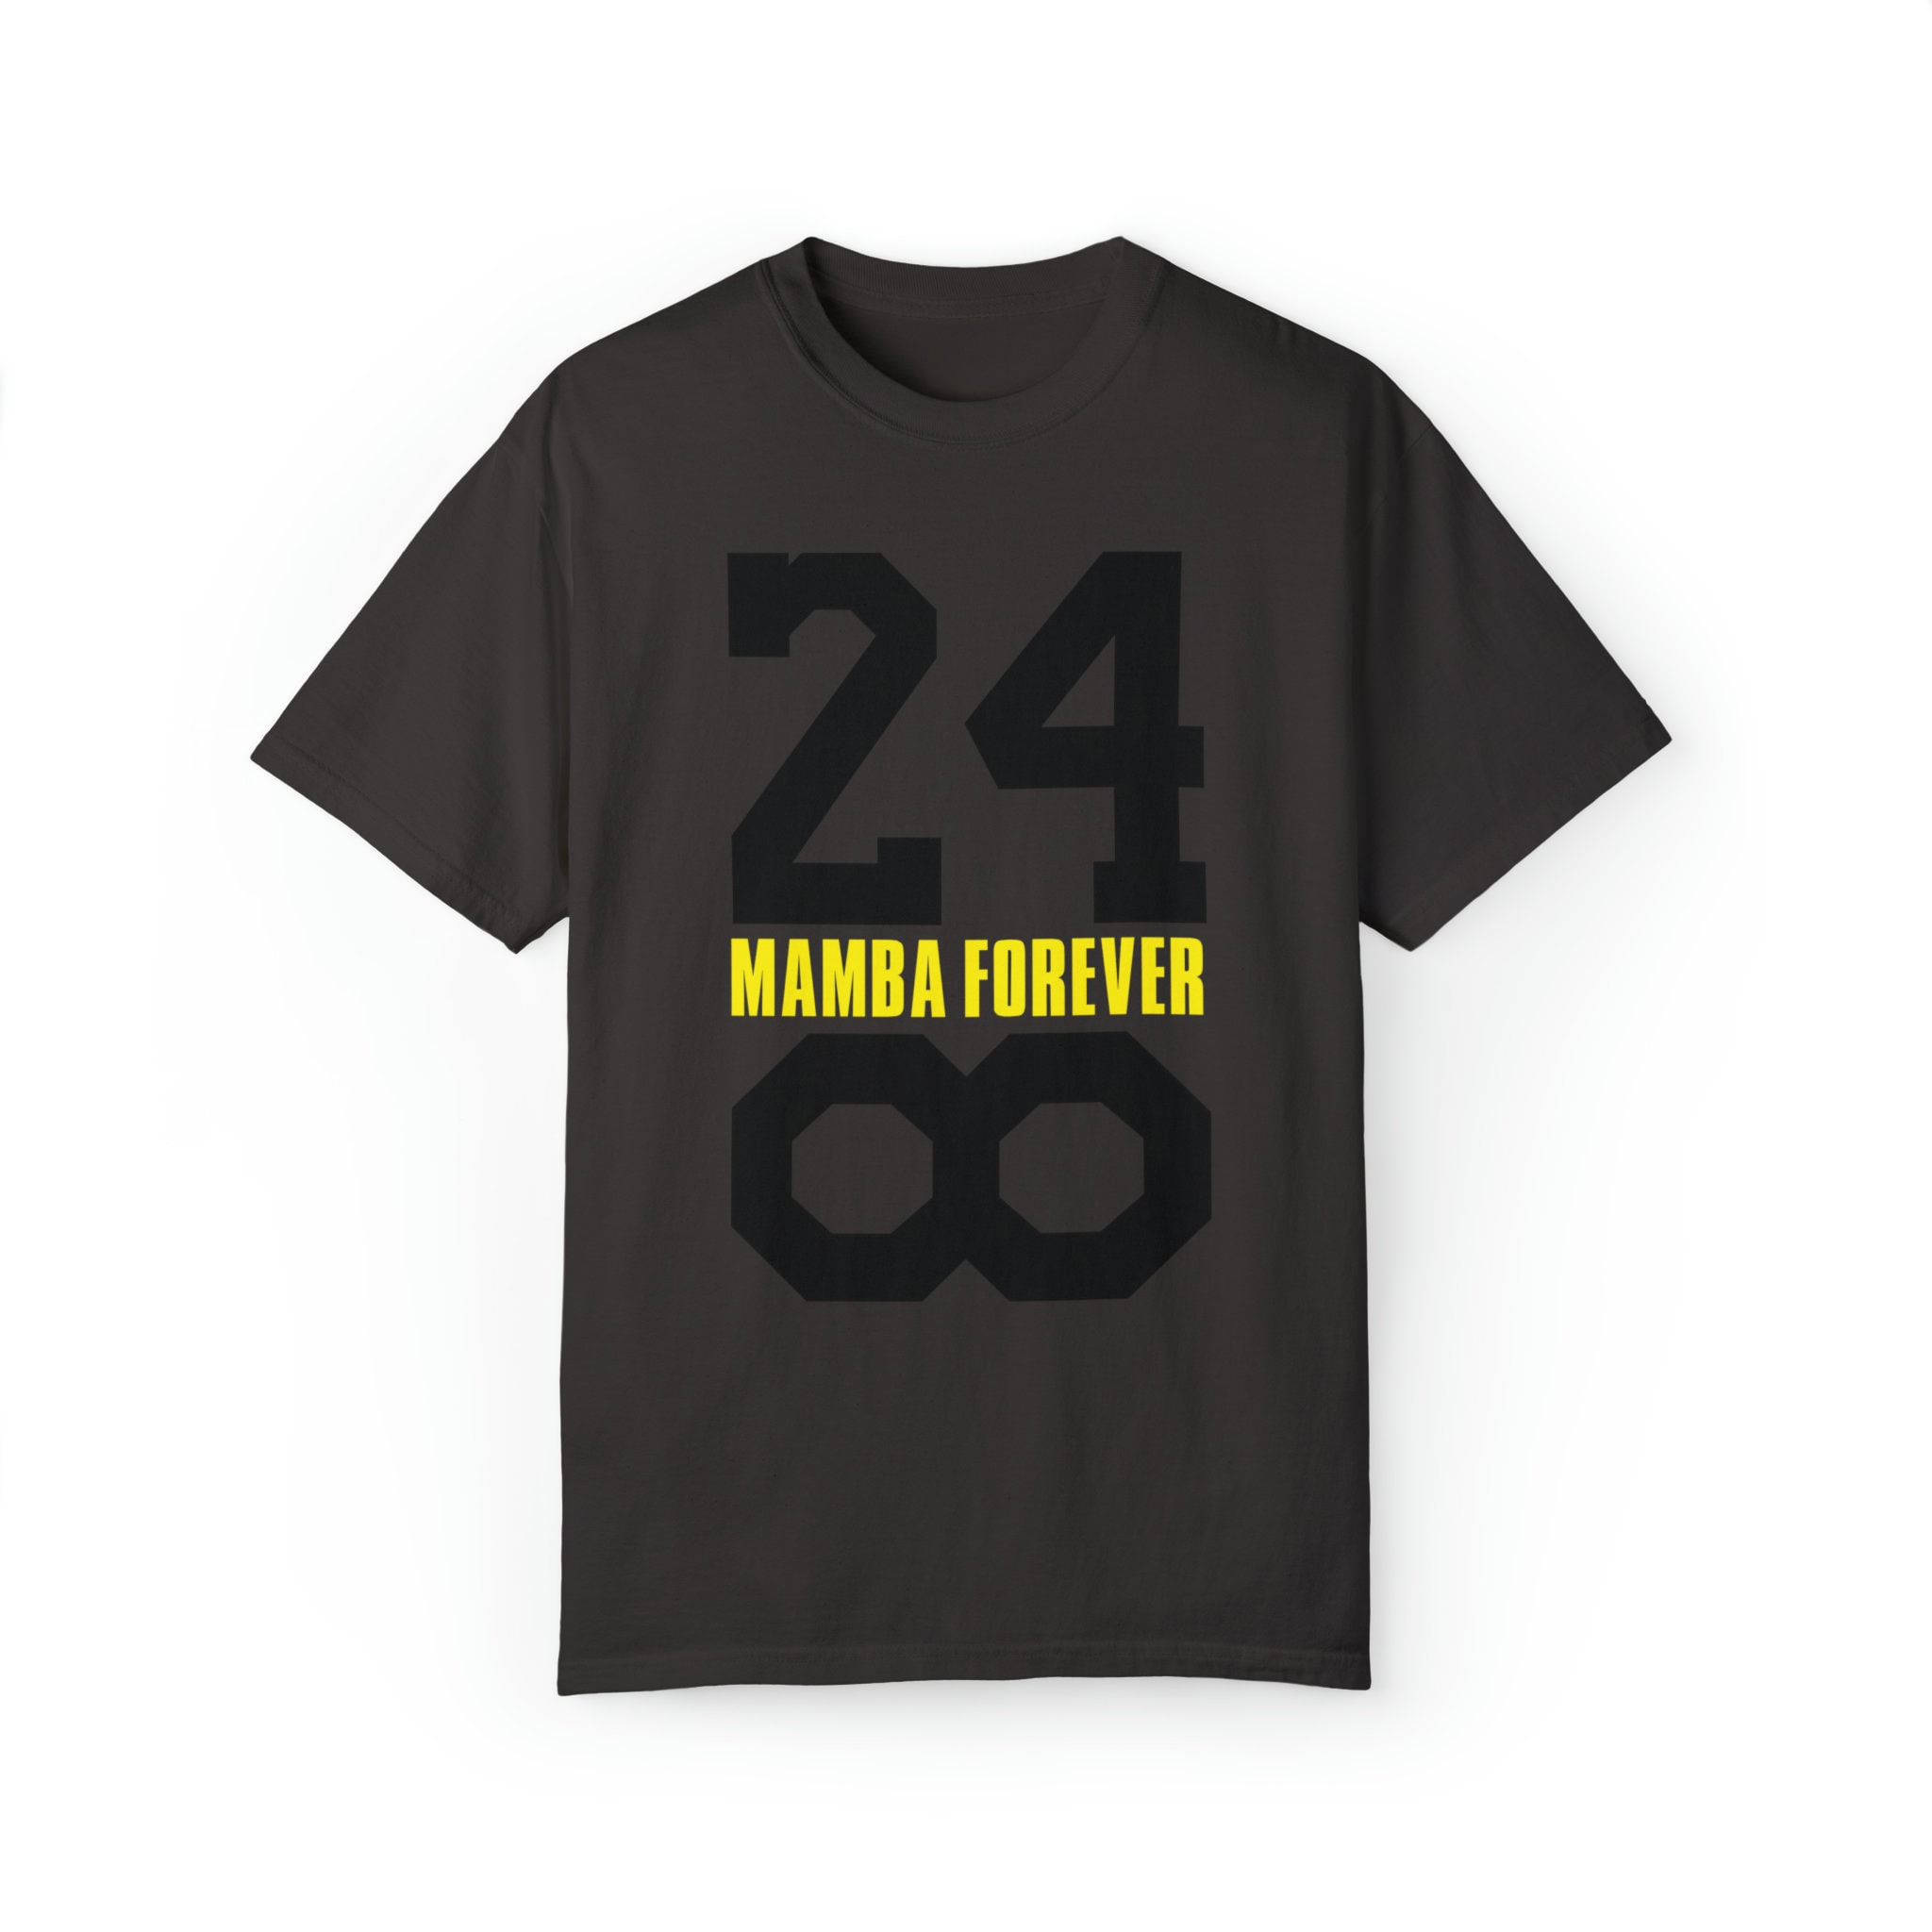 Mamba Forever Shirt Sweatshirt Hoodie All Over Printed Mamba Shirt